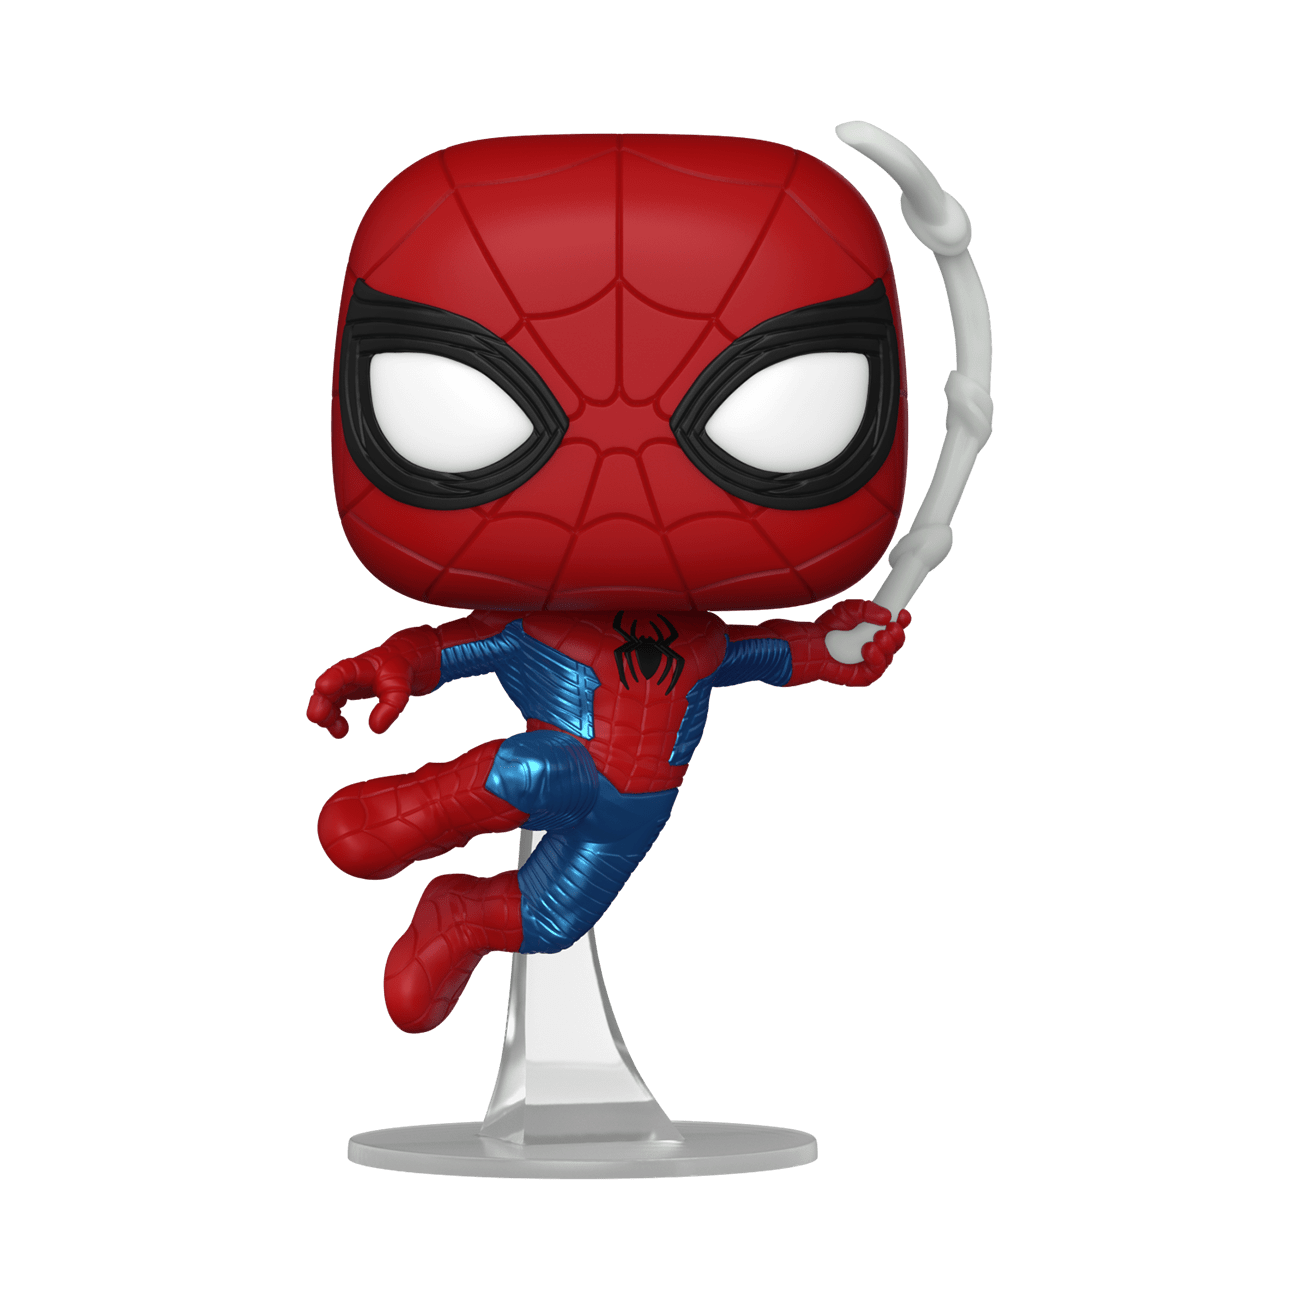 Funko Marvel Studios Spider-man No Way Home New Suit Pop! Vinyl Figure